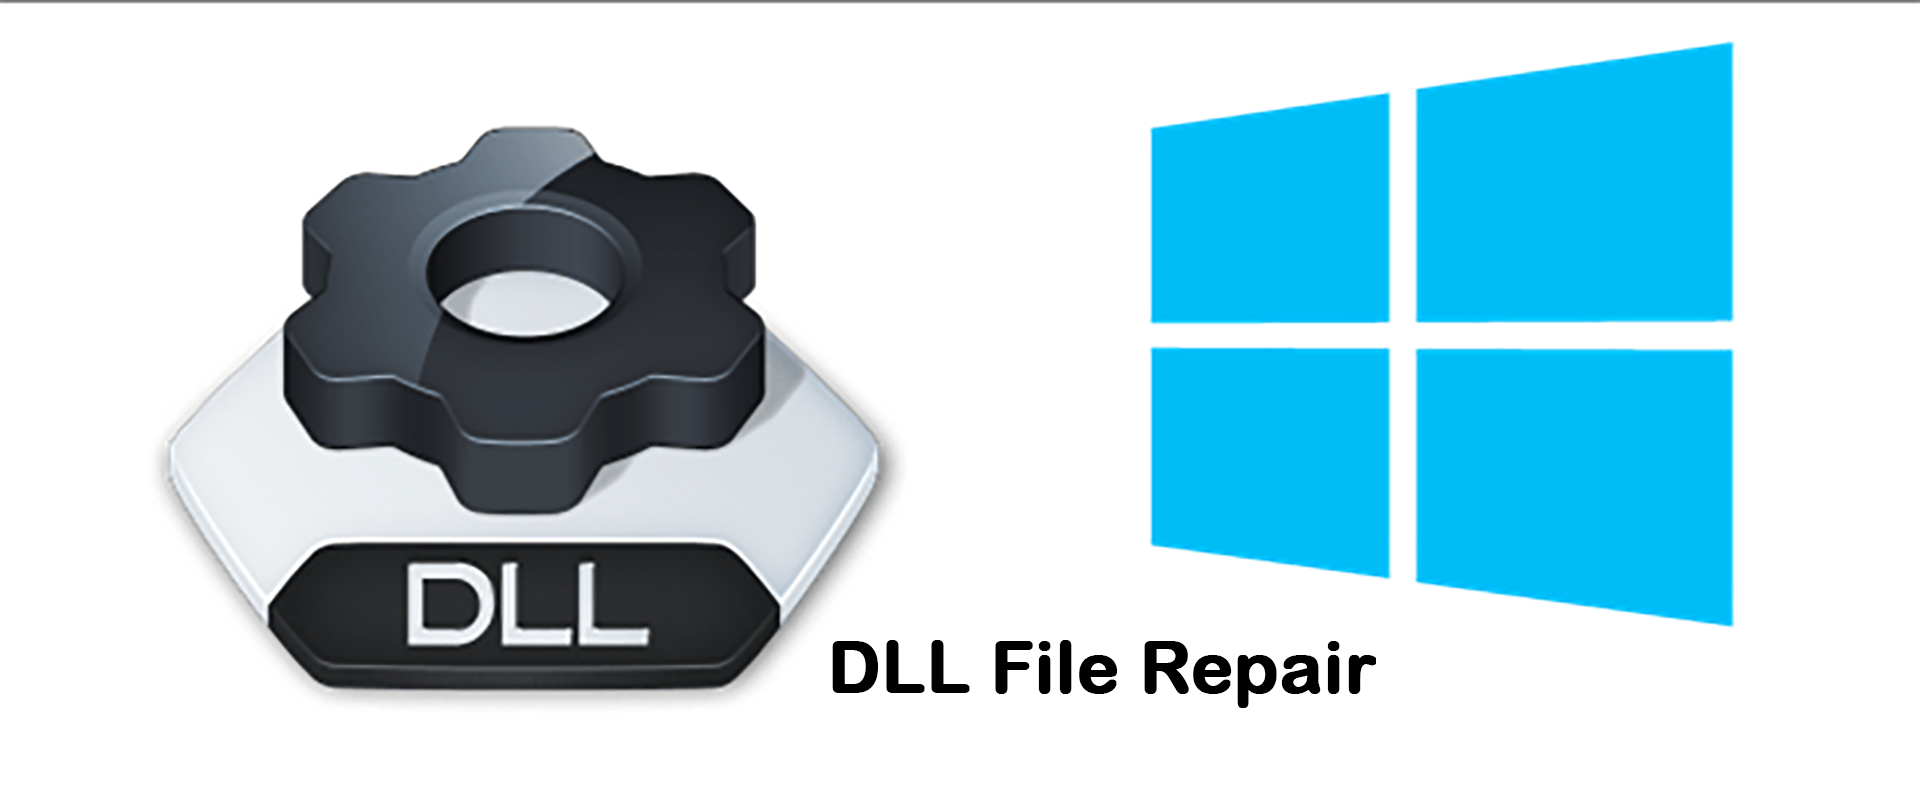 DLL file repair